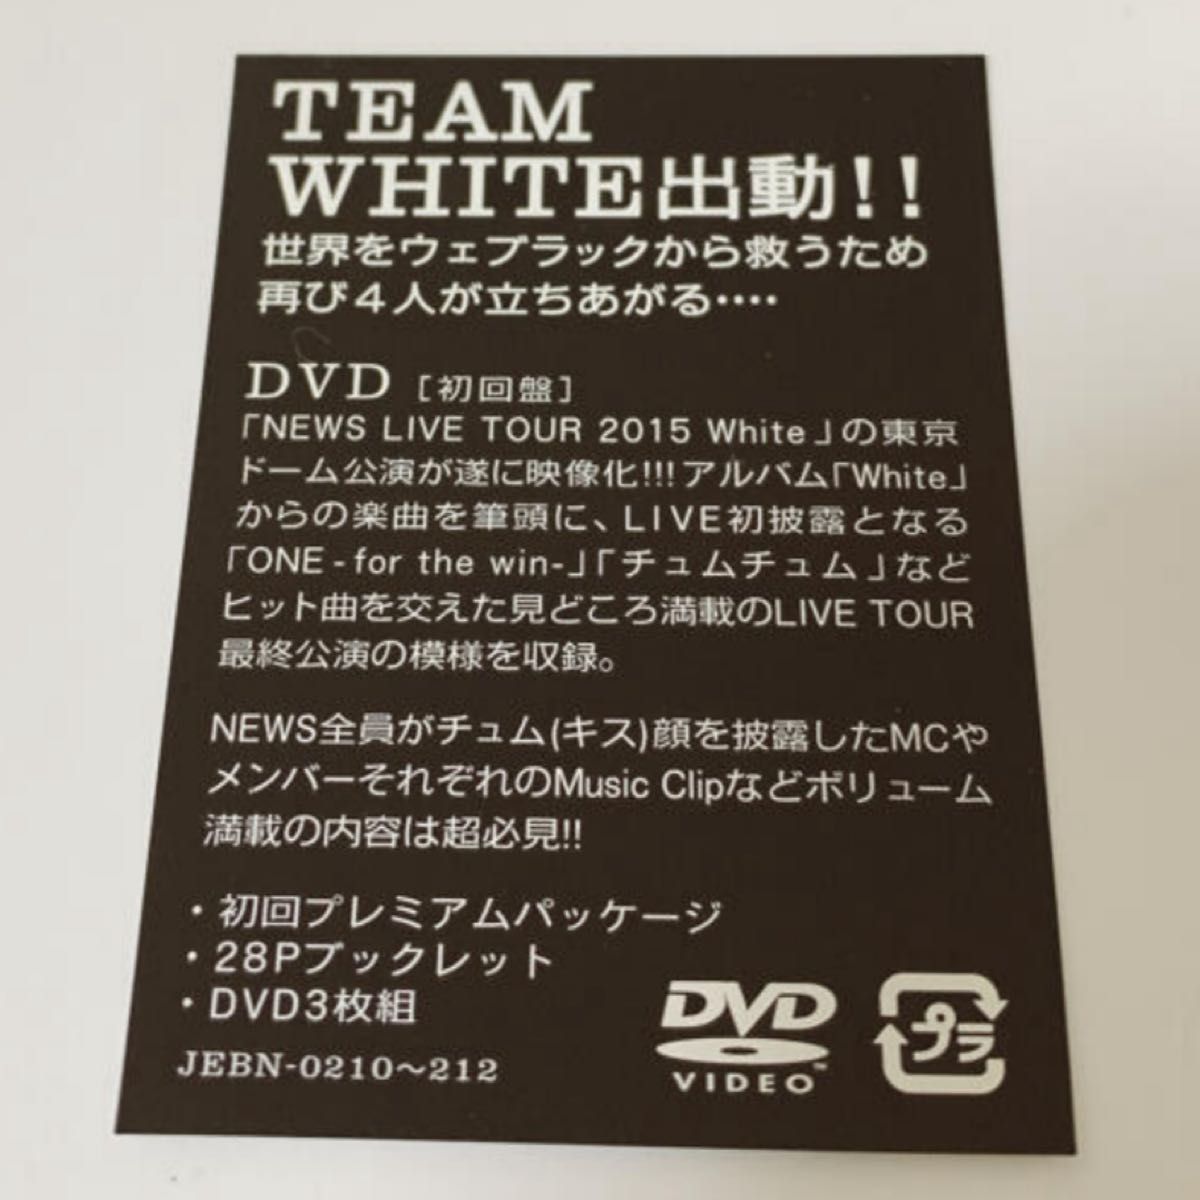 NEWS DVD初回盤2枚セット売り